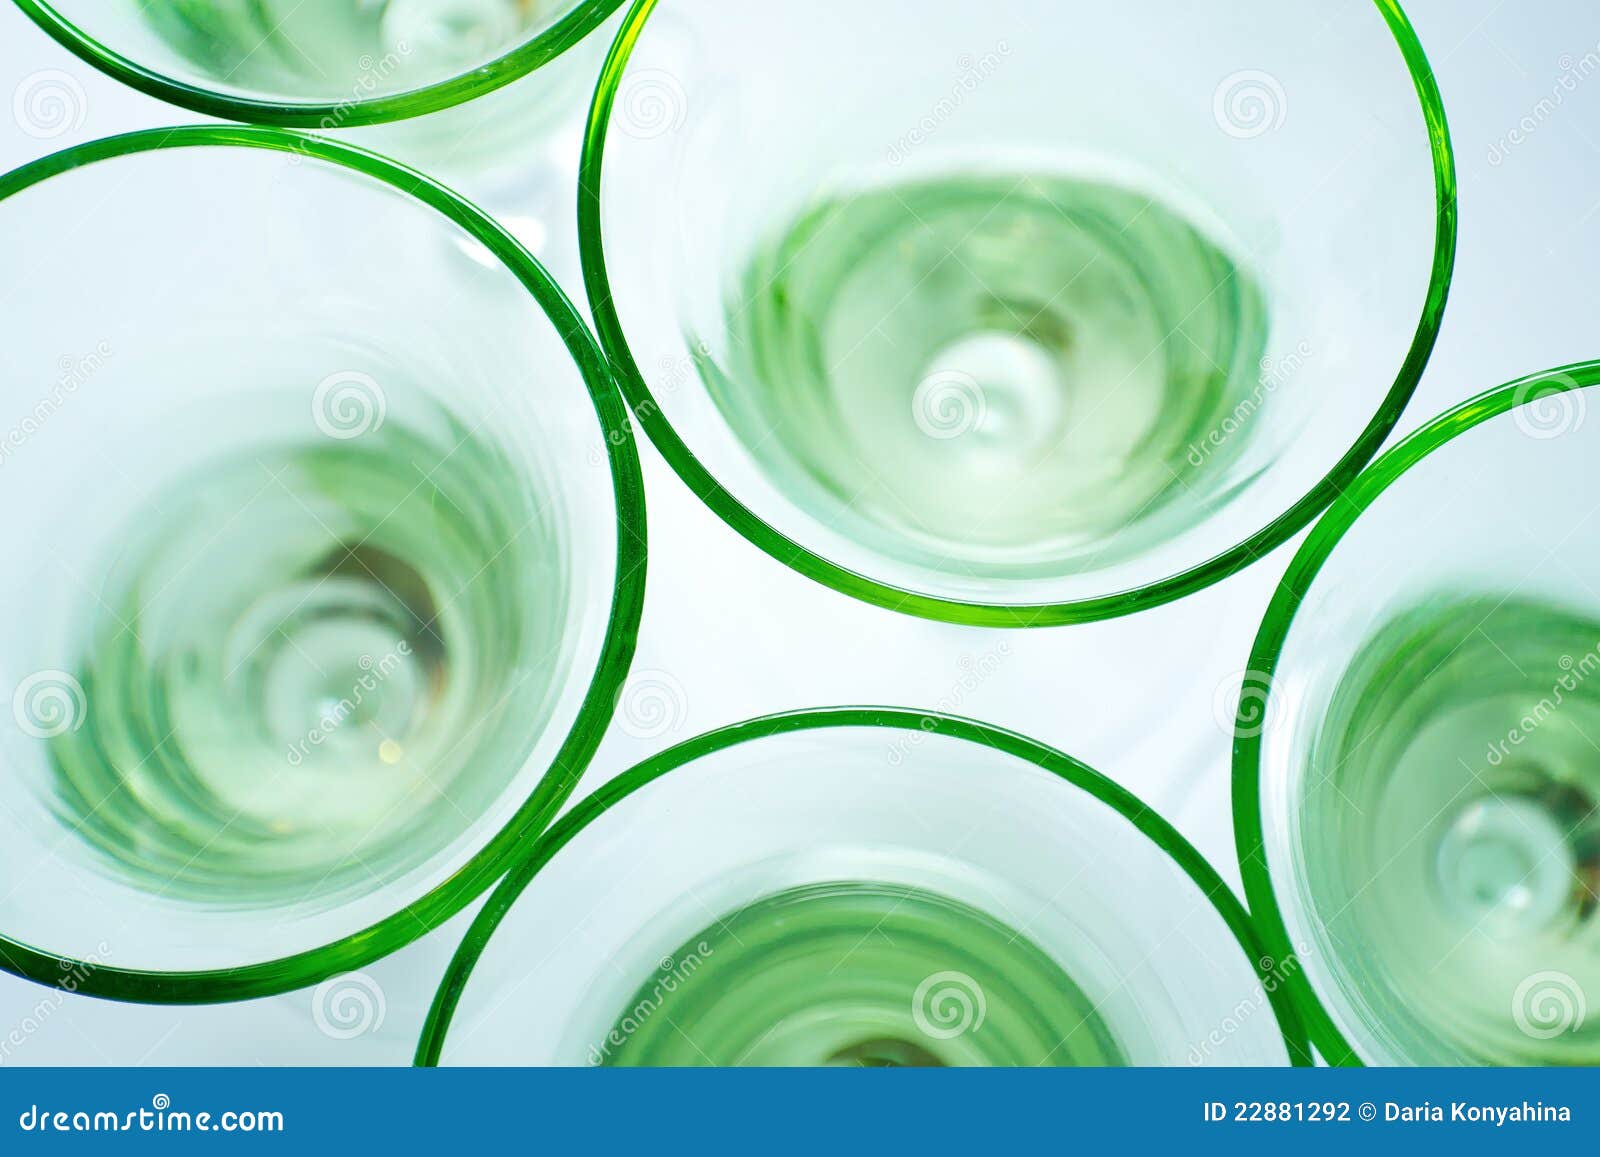 Transparante Groene Op Wit Stock Foto Image of glazen, leggen: 22881292